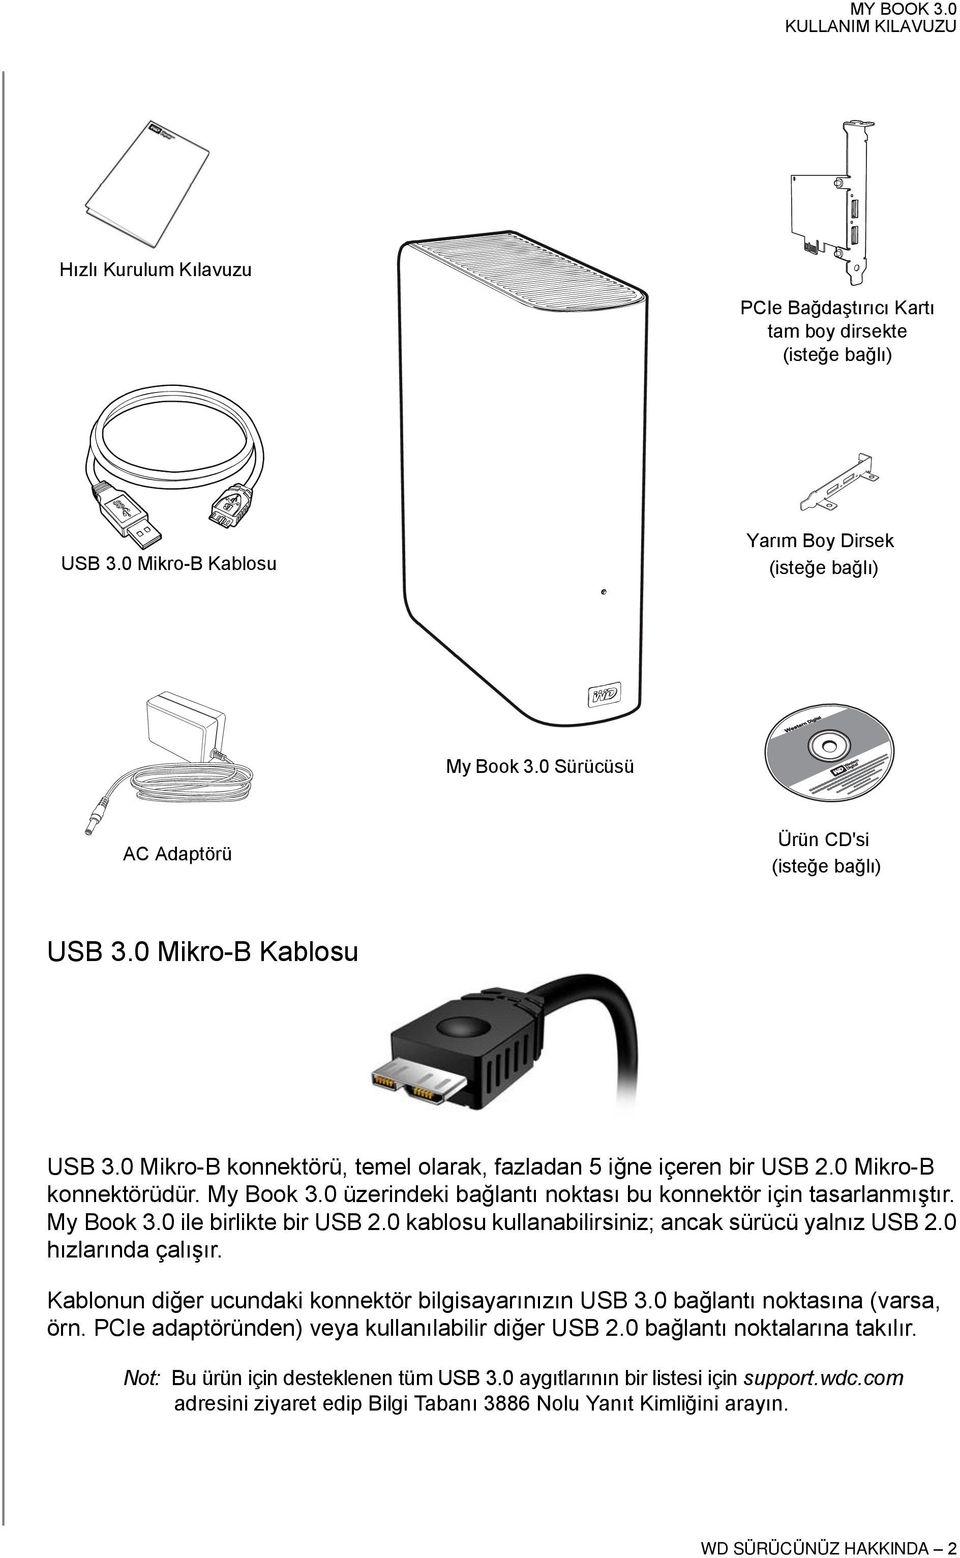 My Book 3.0 ile birlikte bir USB 2.0 kablosu kullanabilirsiniz; ancak sürücü yalnız USB 2.0 hızlarında çalışır. Kablonun diğer ucundaki konnektör bilgisayarınızın USB 3.